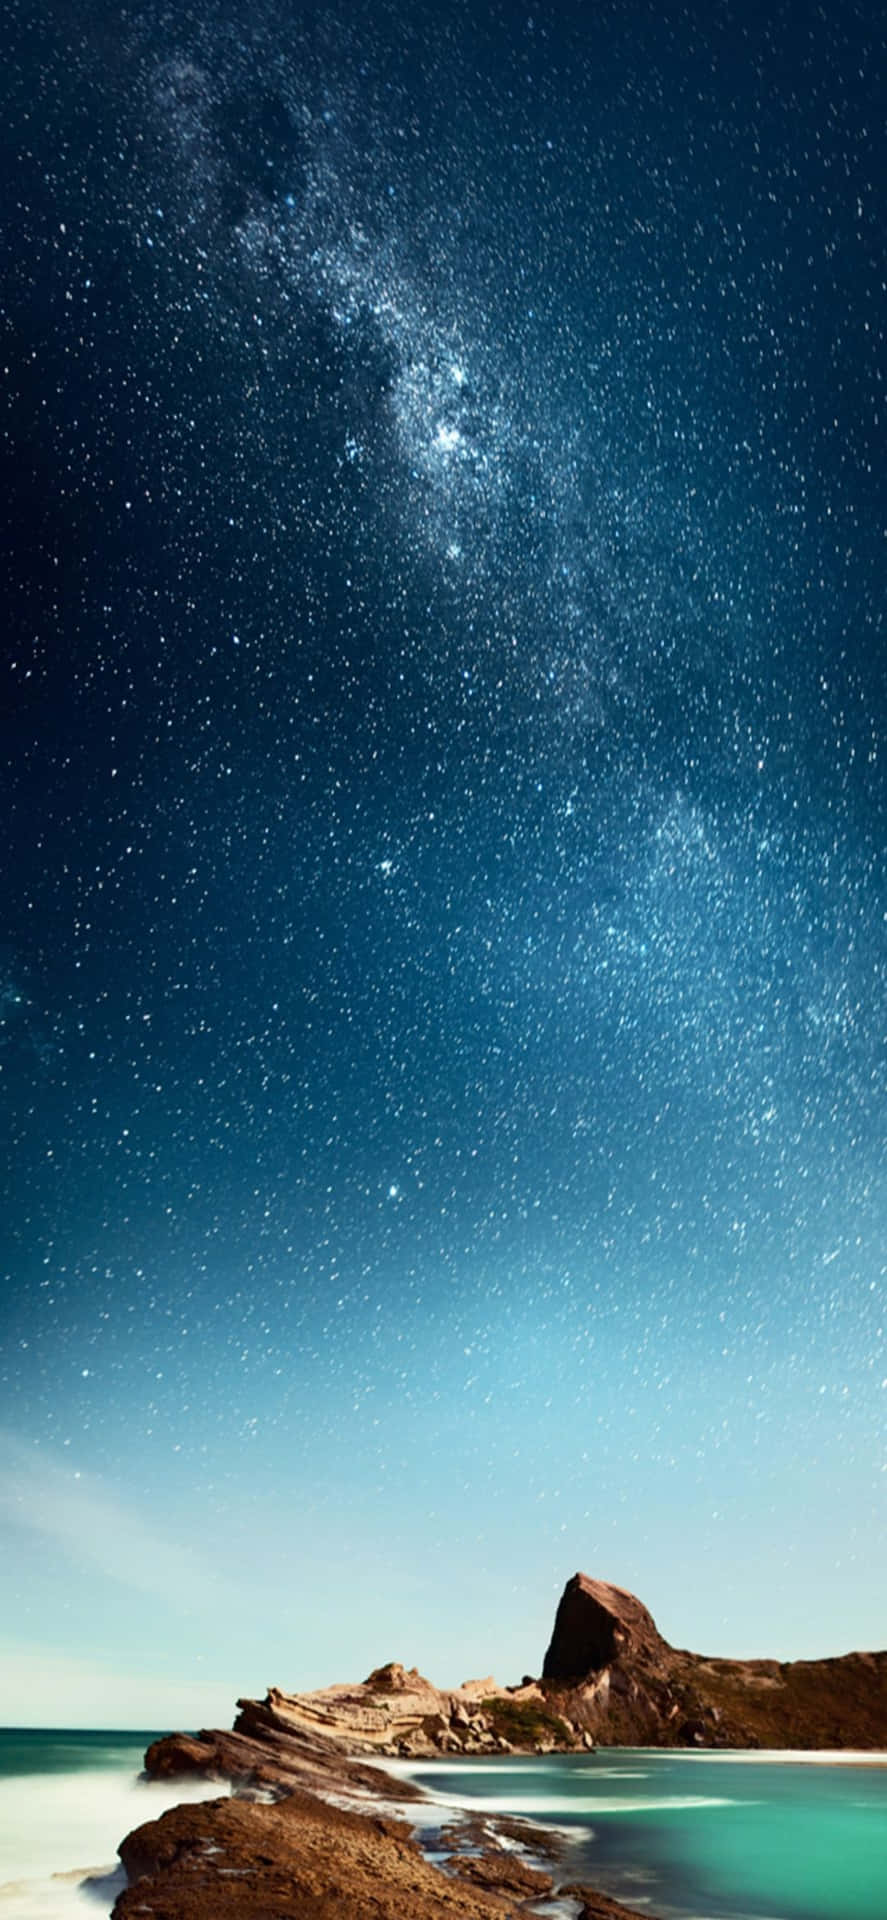 Iphonexs Bakgrundsbild Med Stranden Och Vintergatan